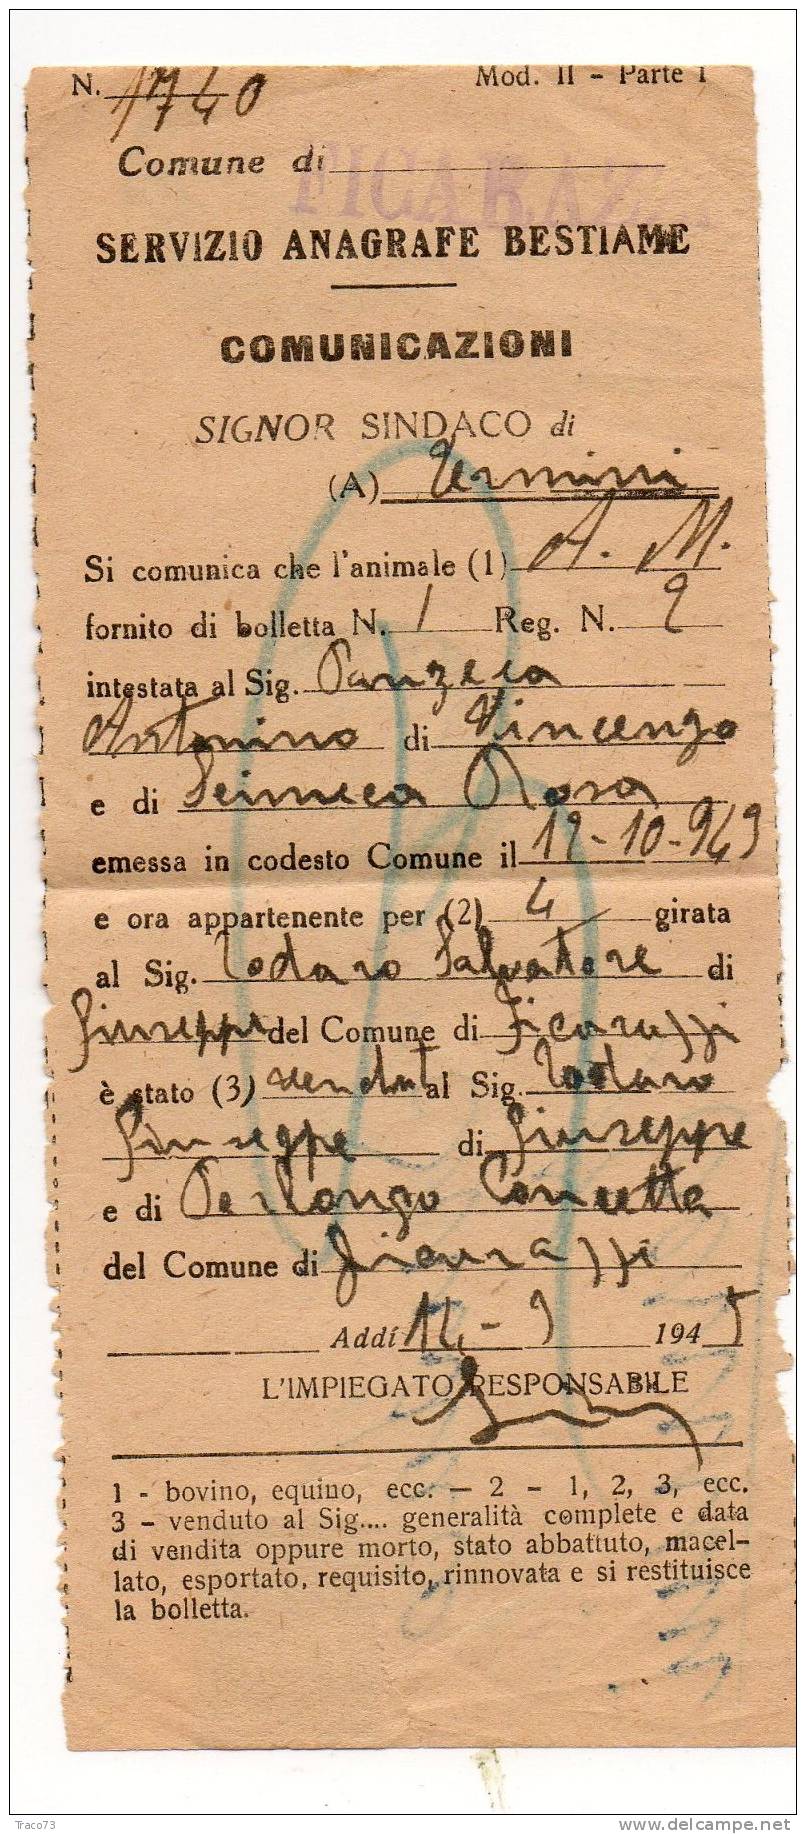 Servizio Anagrafe Bestiame 18.05.1945 - Luogotenenza - Cent. 50 Posta Aerea "PM" - Isolato - Marcofilía